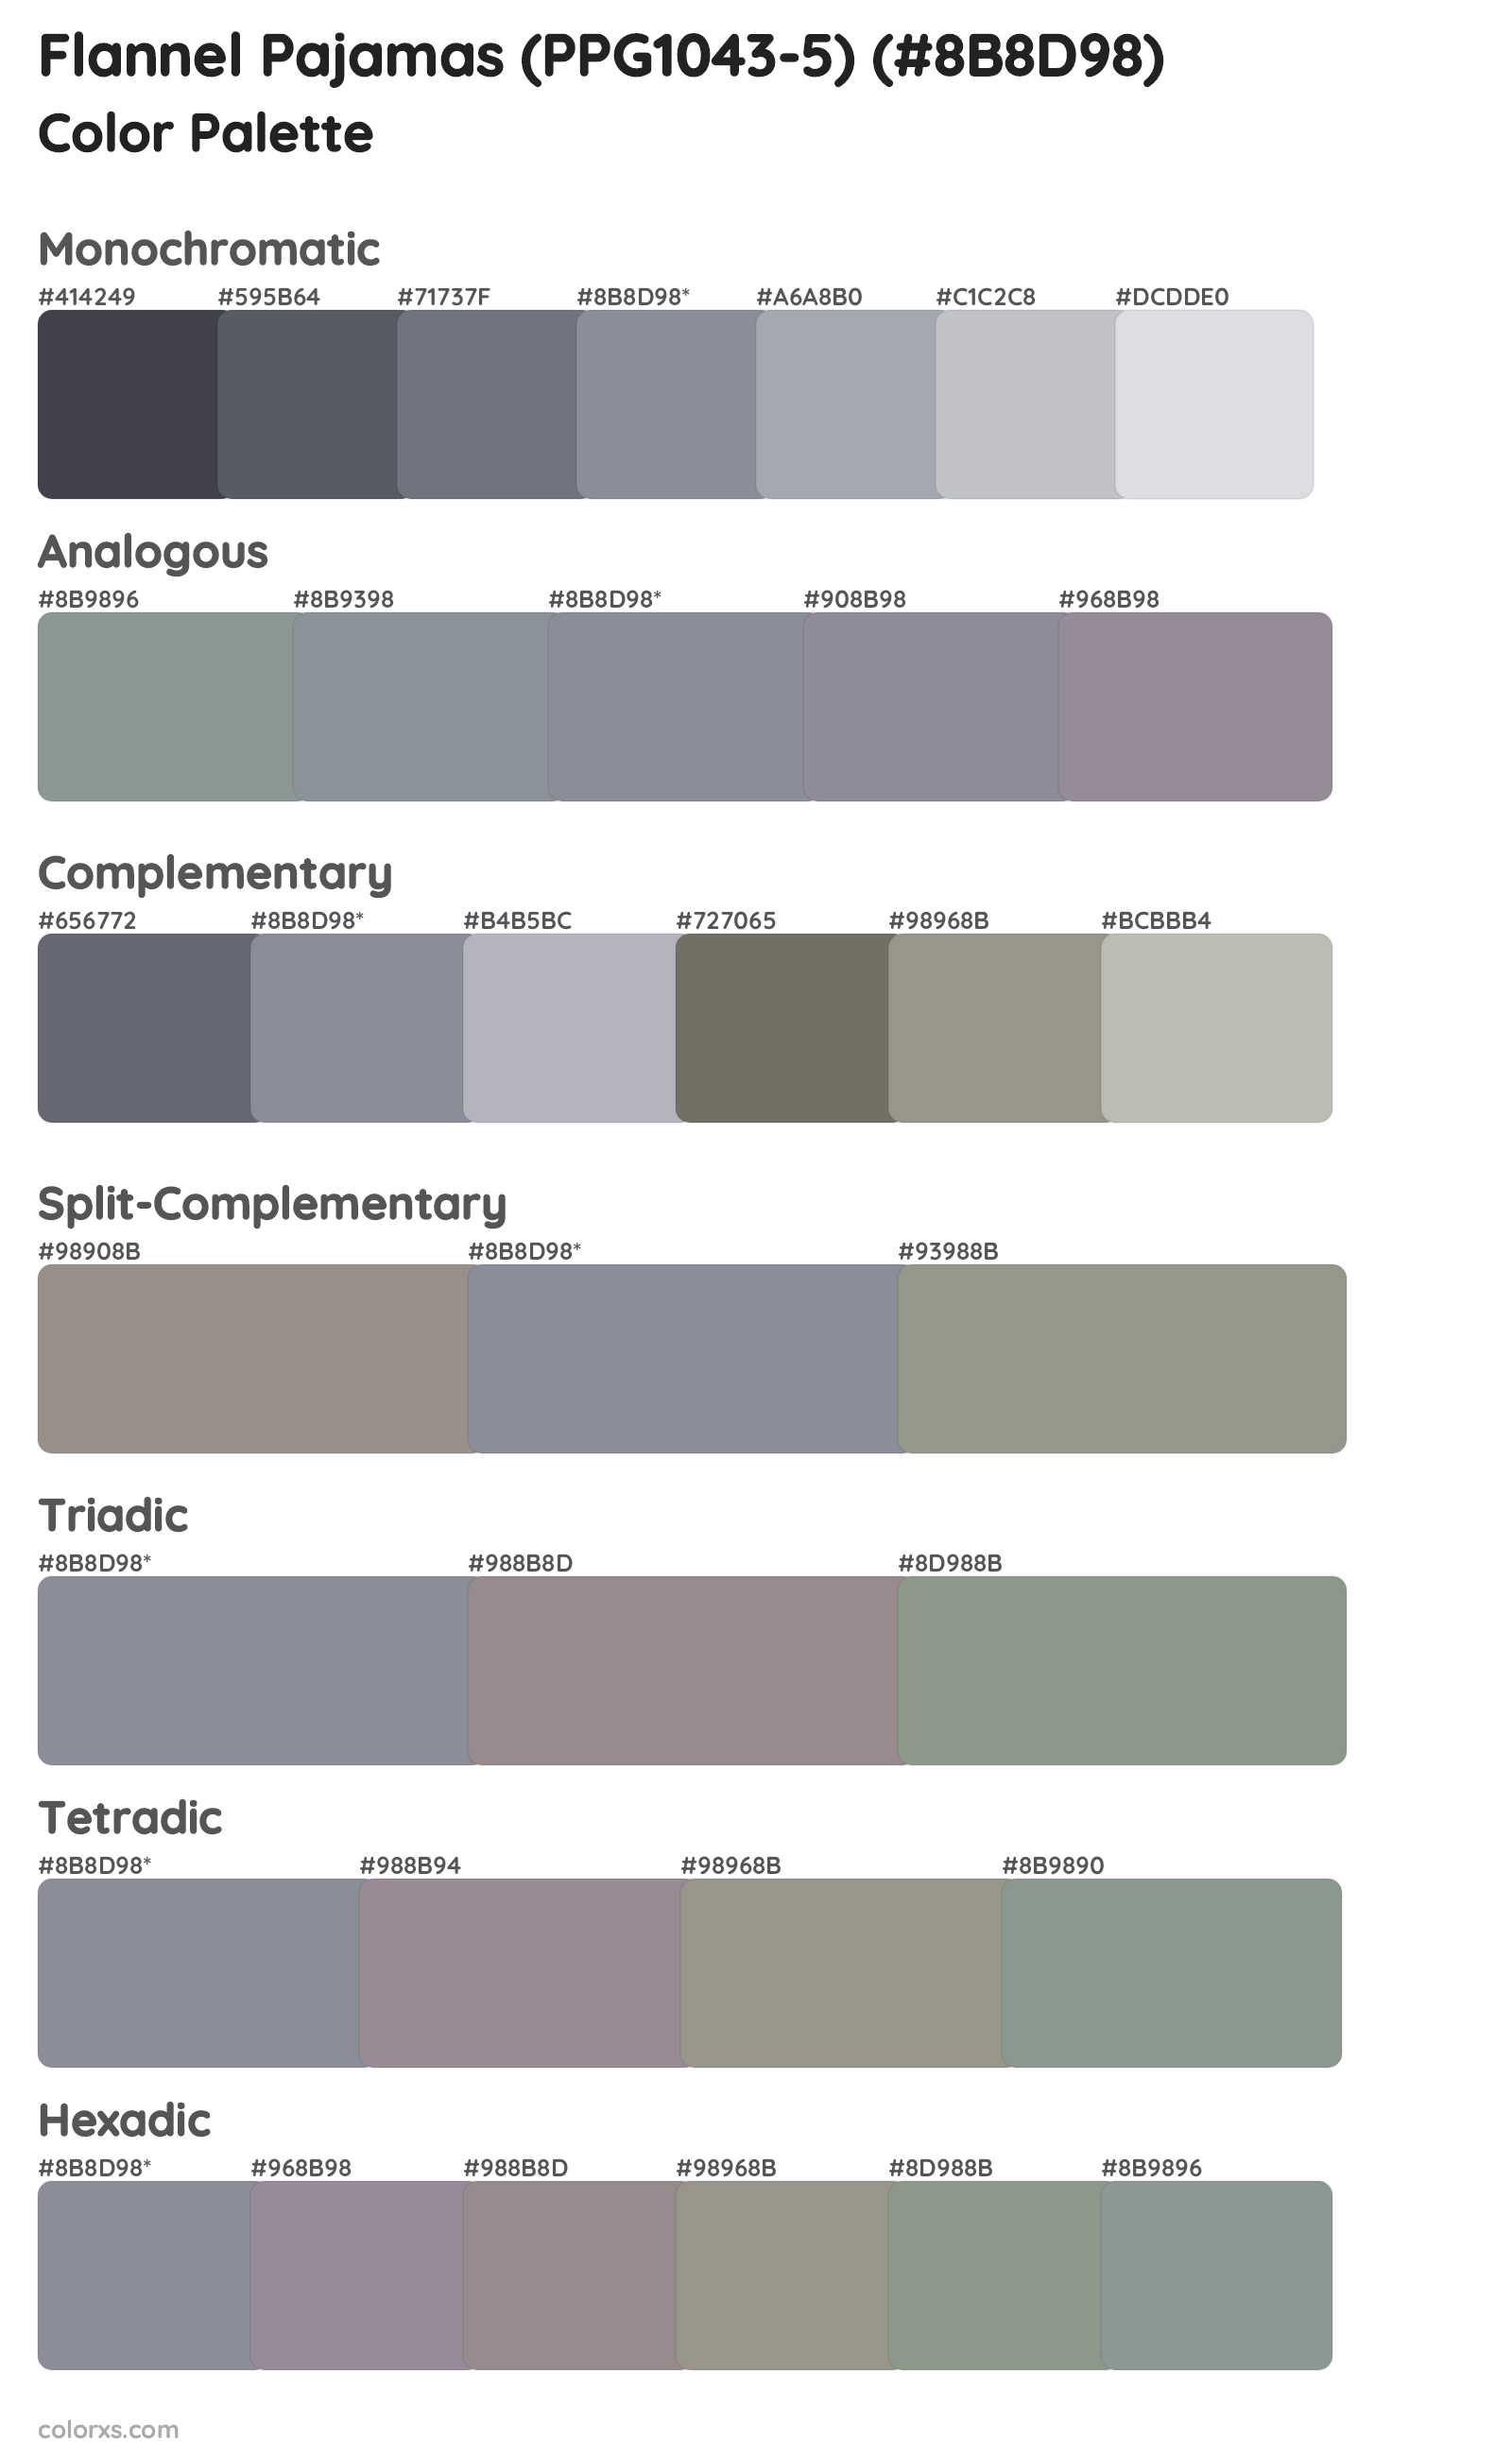 Flannel Pajamas (PPG1043-5) Color Scheme Palettes